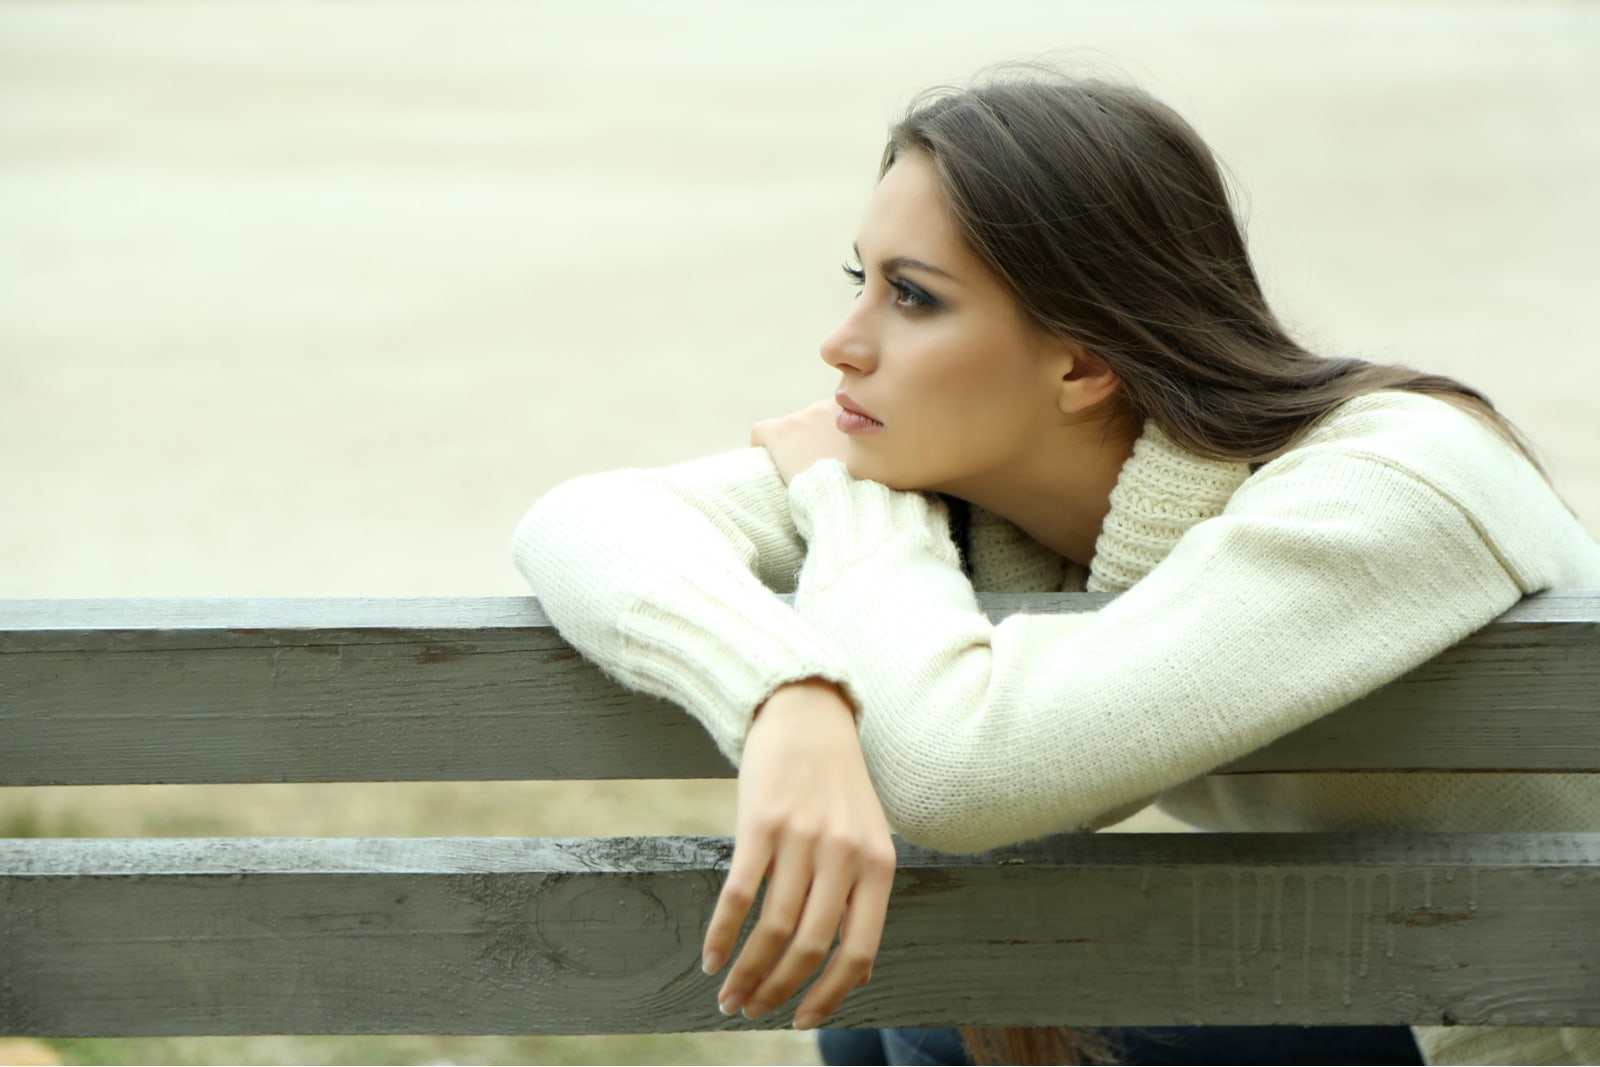 una giovane bruna e triste siede da sola su una panchina del parco